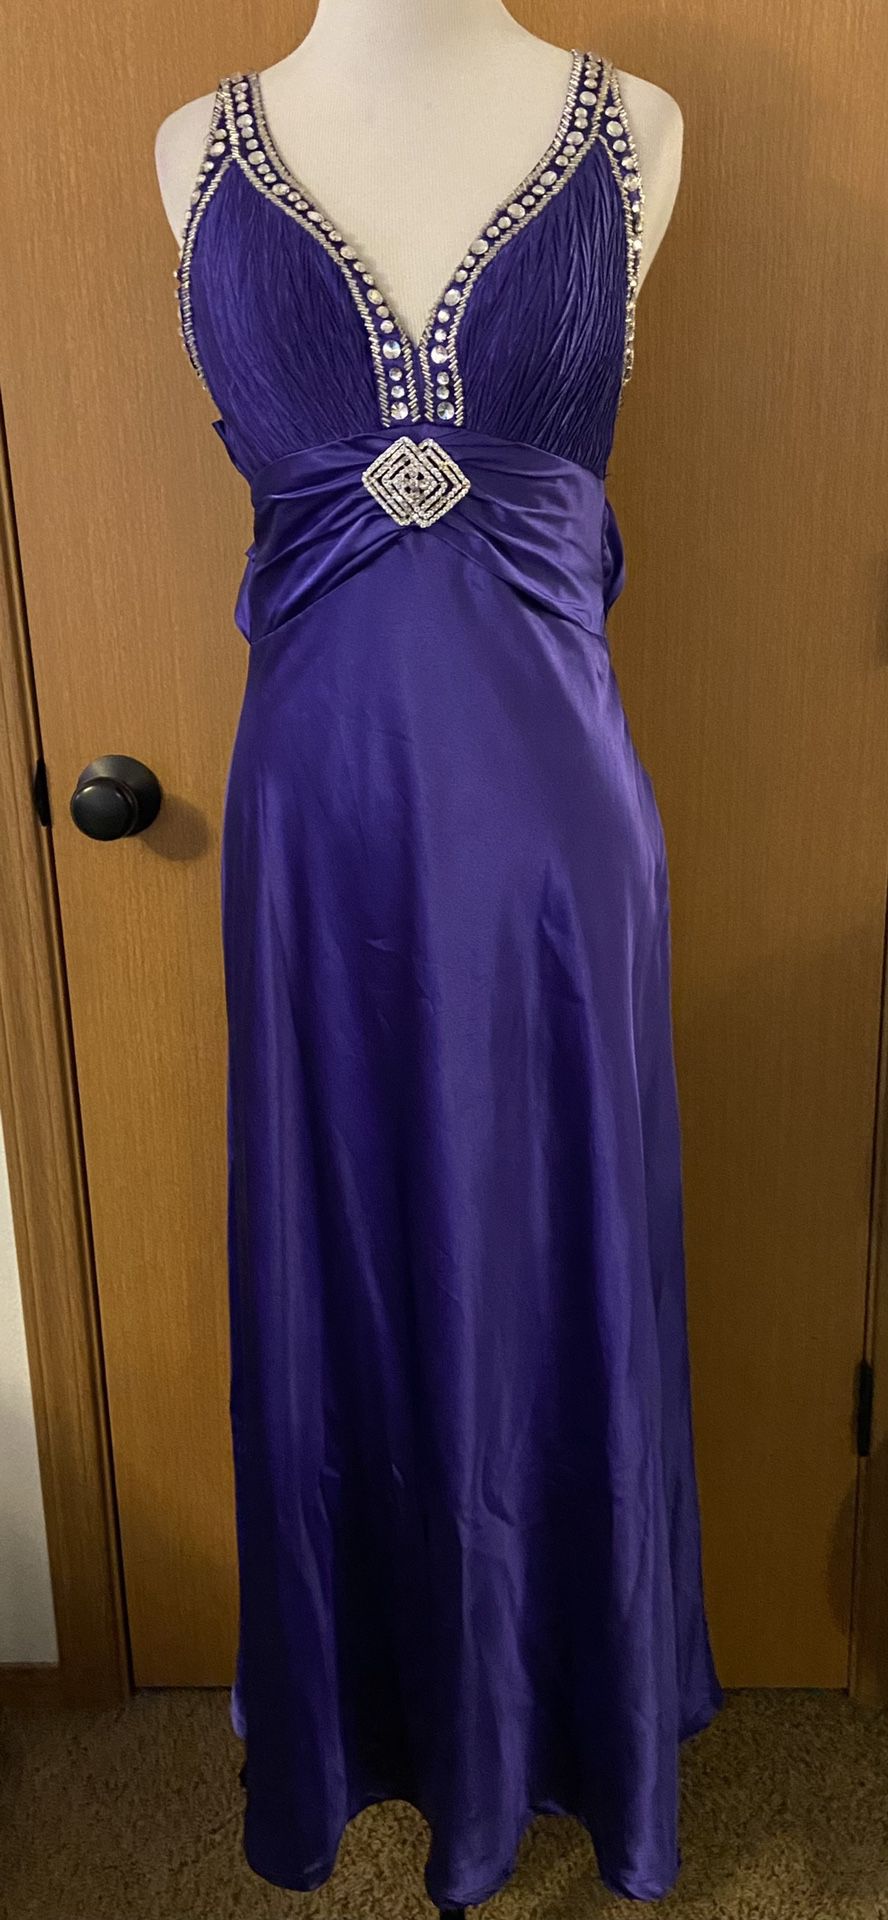 F.I.E.S.T.A Purple “Satin” Rhinestone Dress